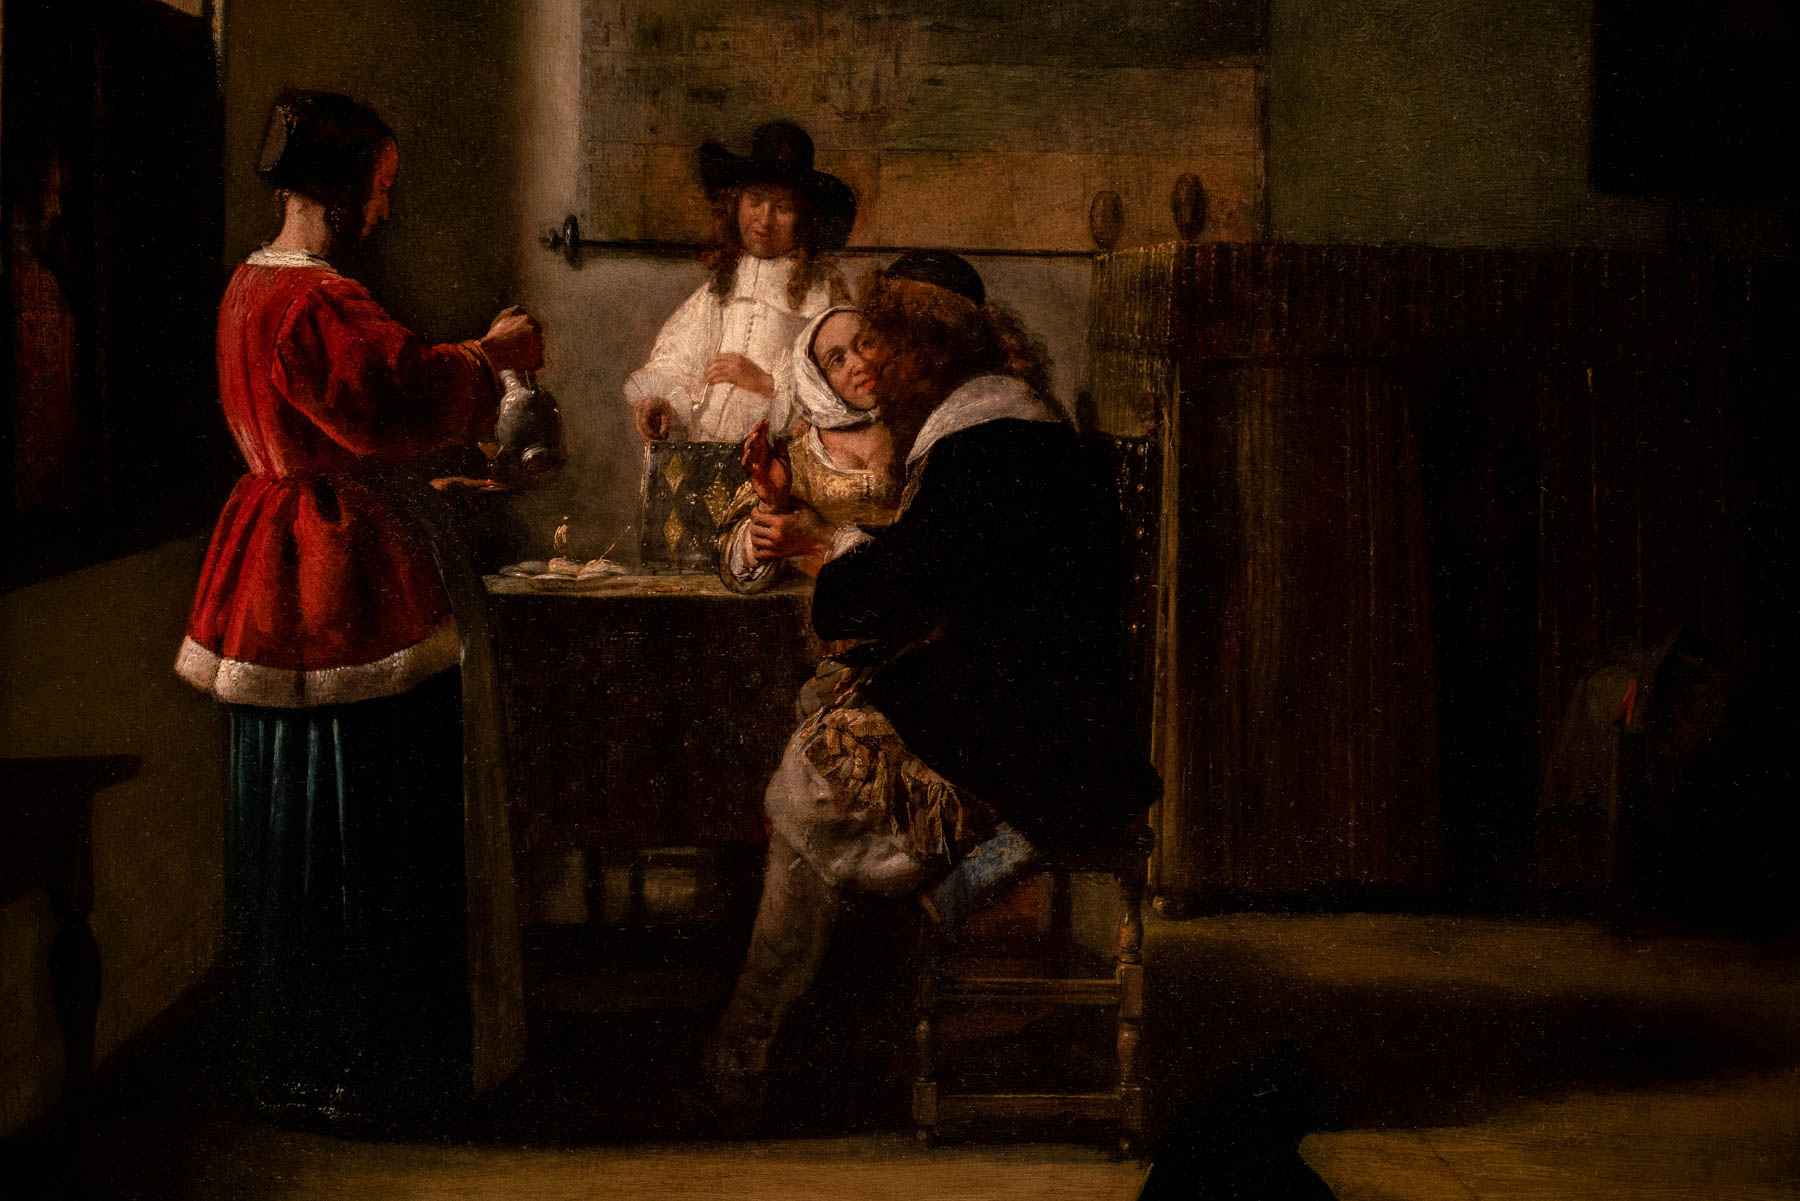 The MET Must see
The 5 Paintings by Vermeer